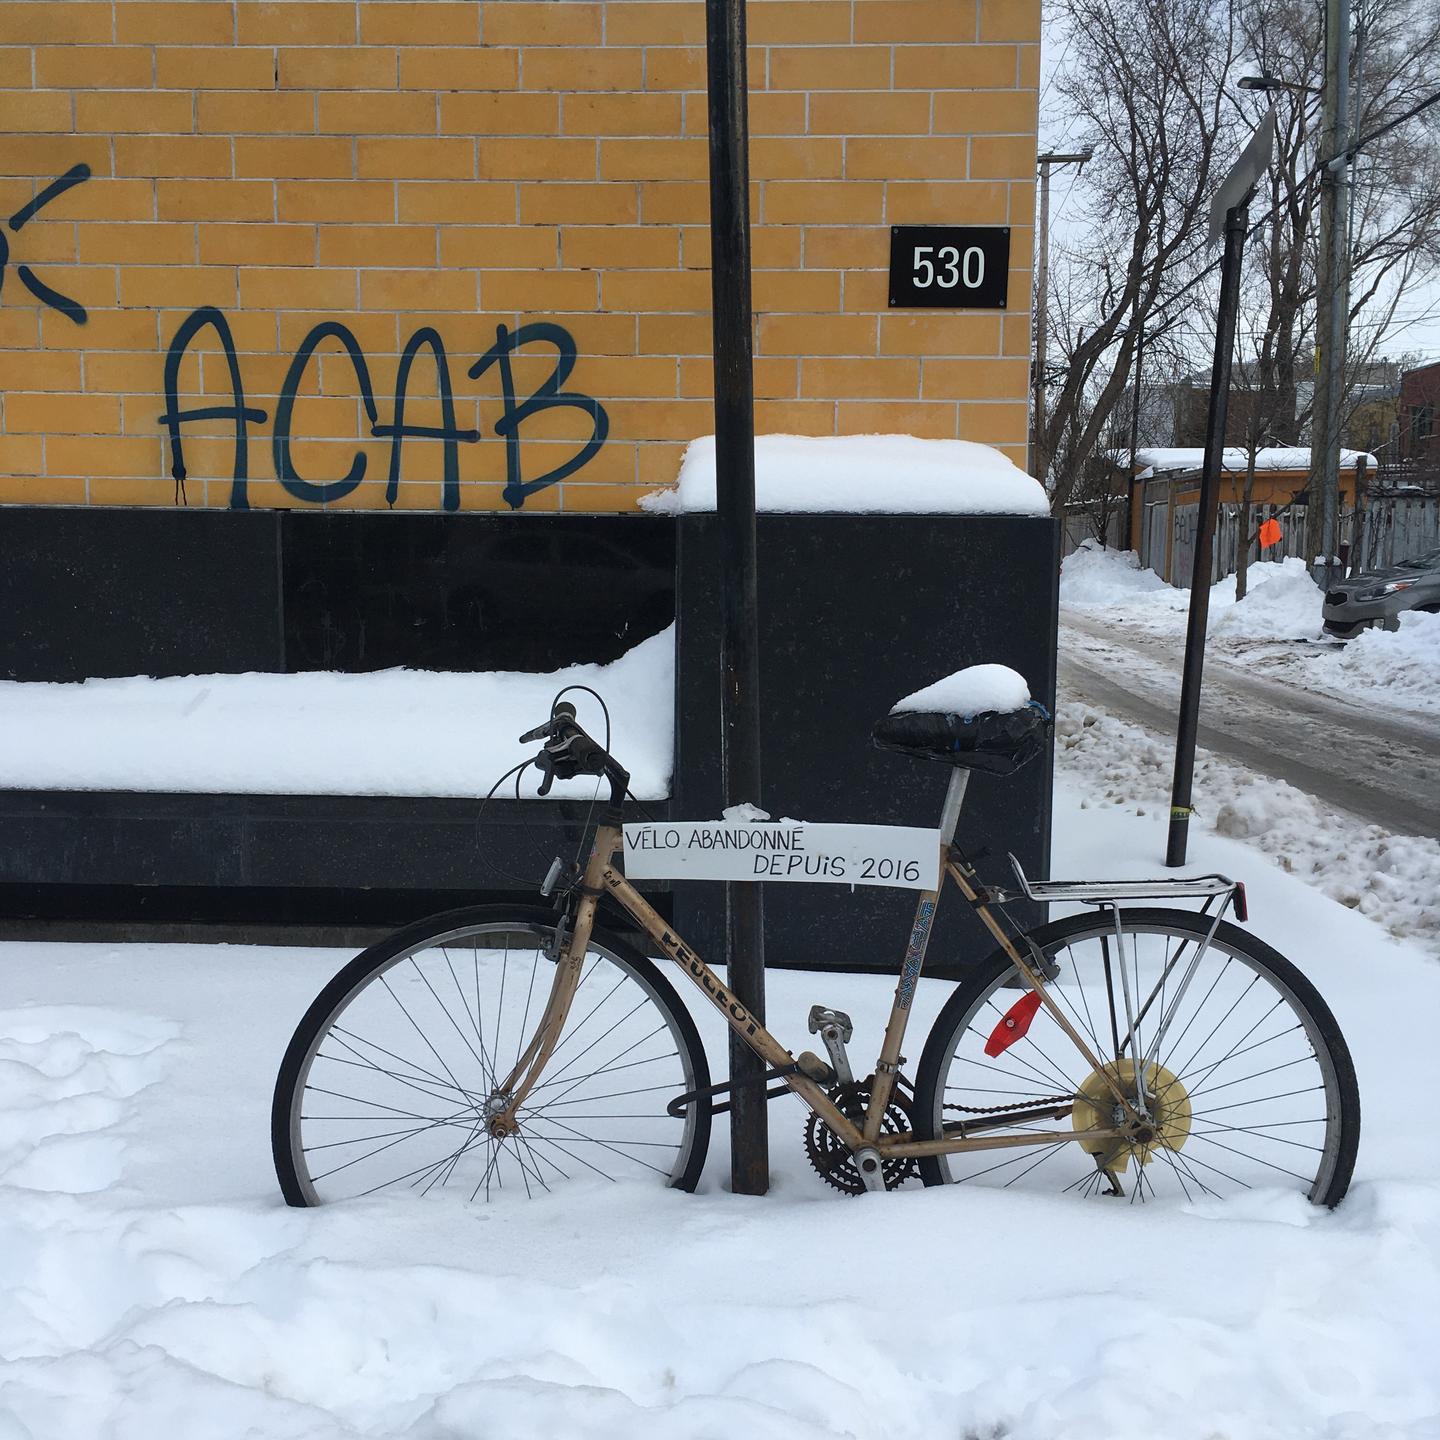 Vélo accroché dans la rue avec une pancarte indiquant vélo abandonné depuis 2016